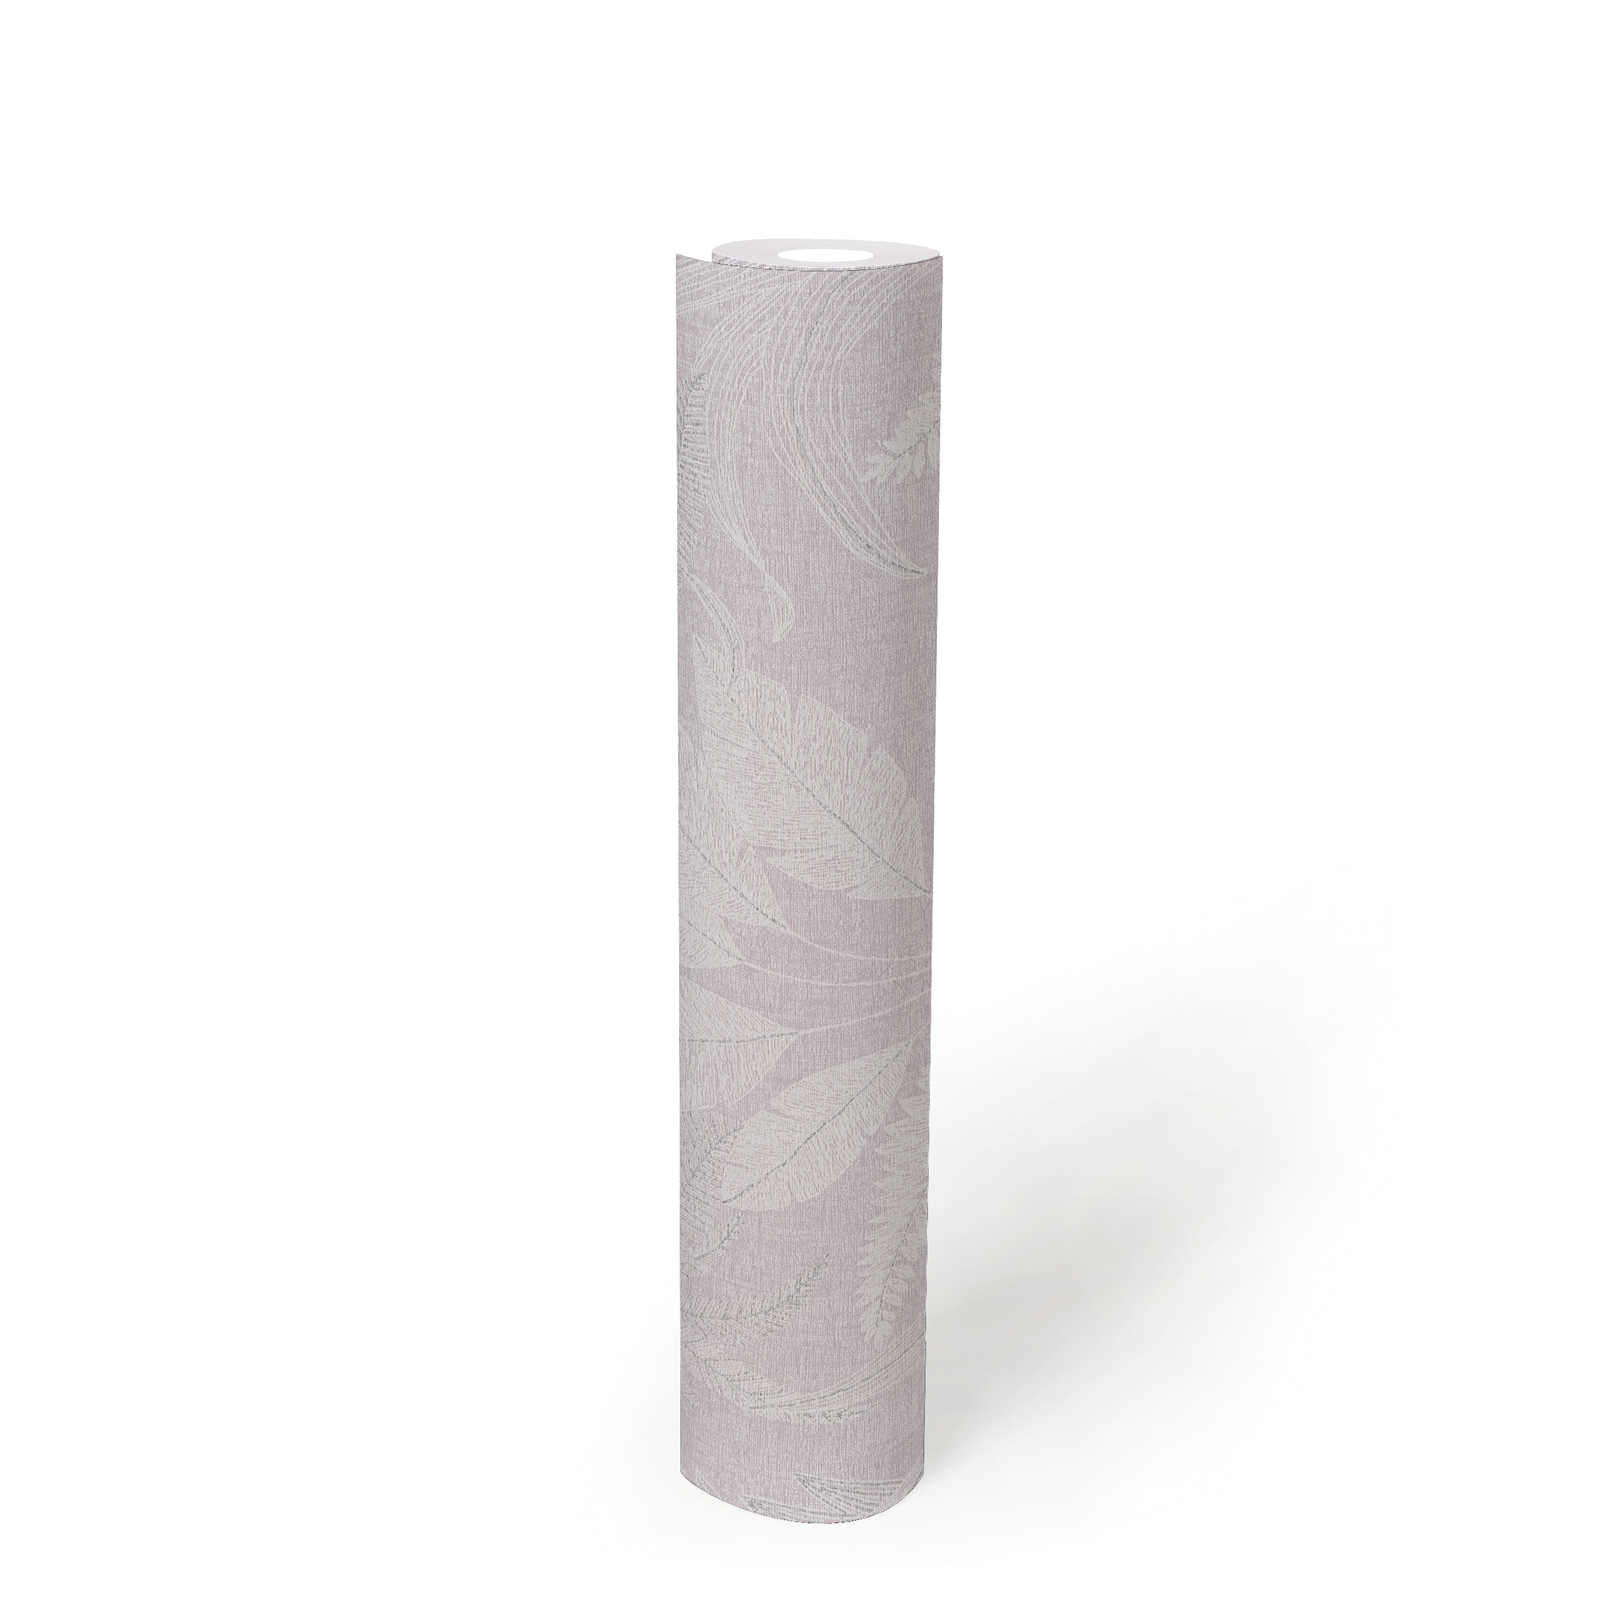             Vliesbehang met groot bladpatroon met lichte structuur - paars, wit, grijs
        